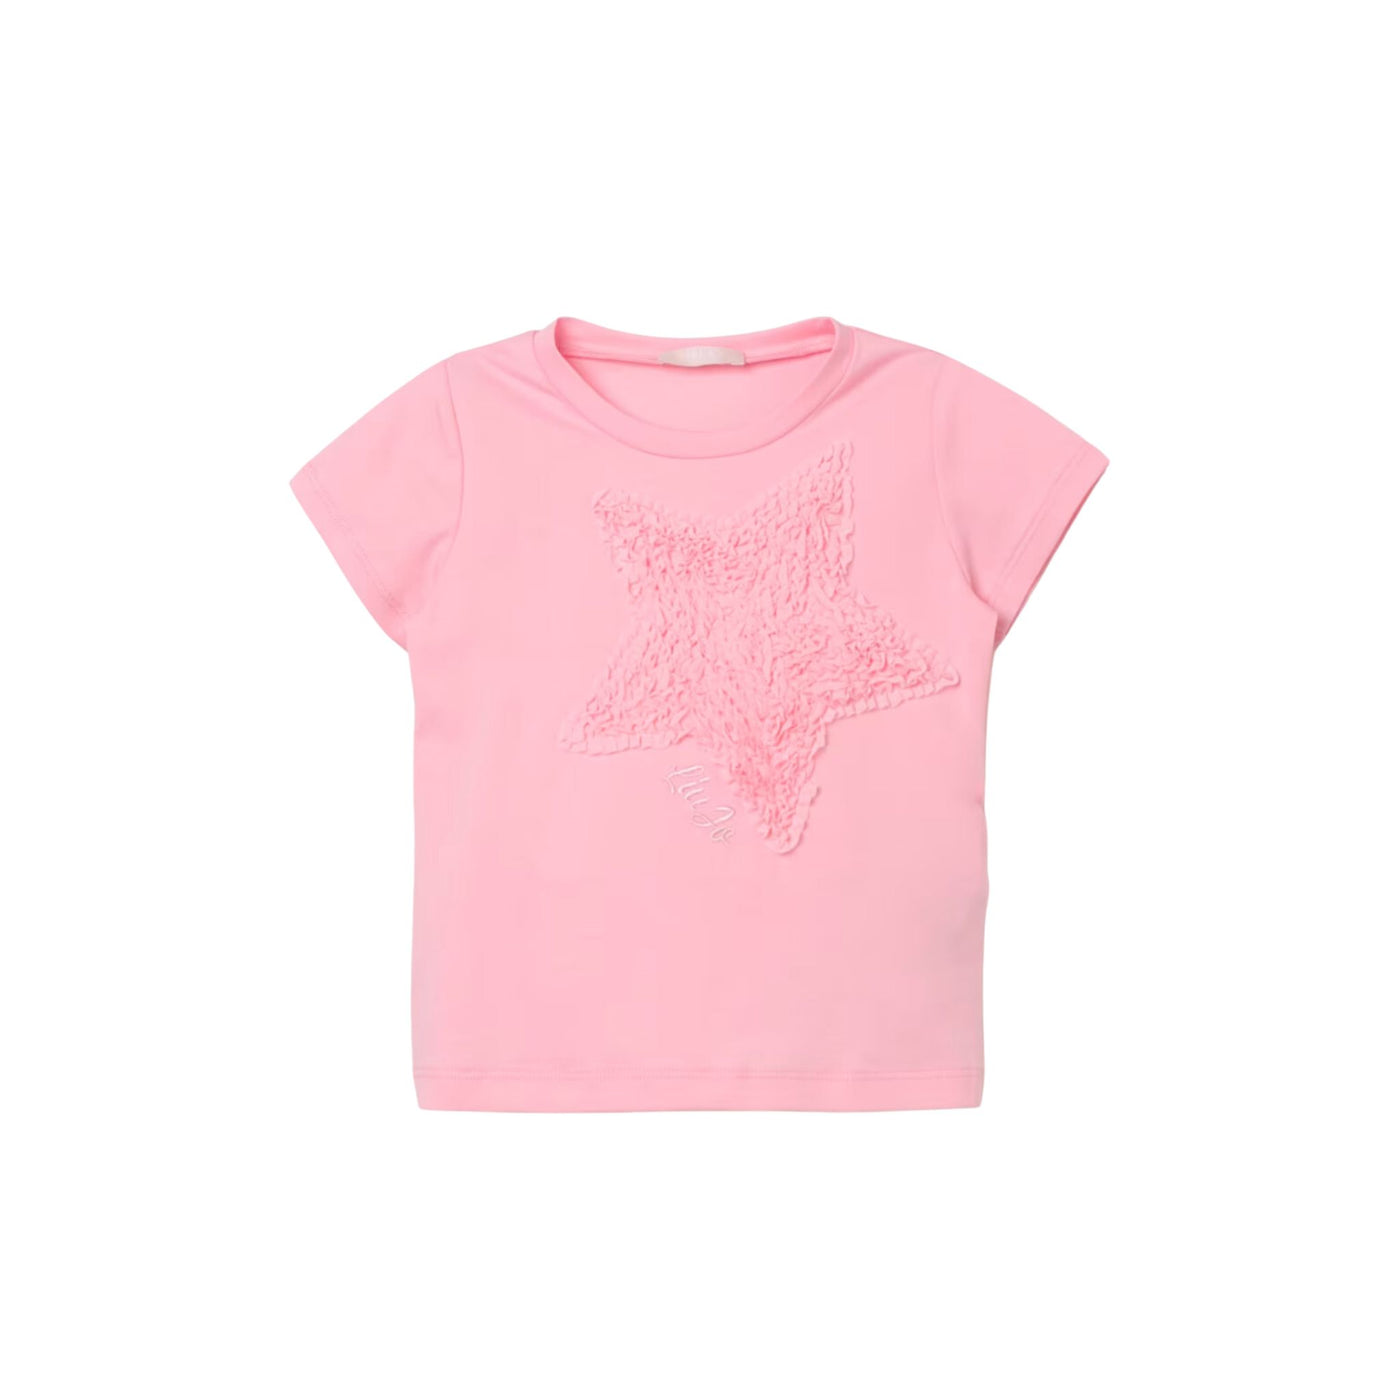 T-shirt Bambina in cotone a maniche corte con stella frontale